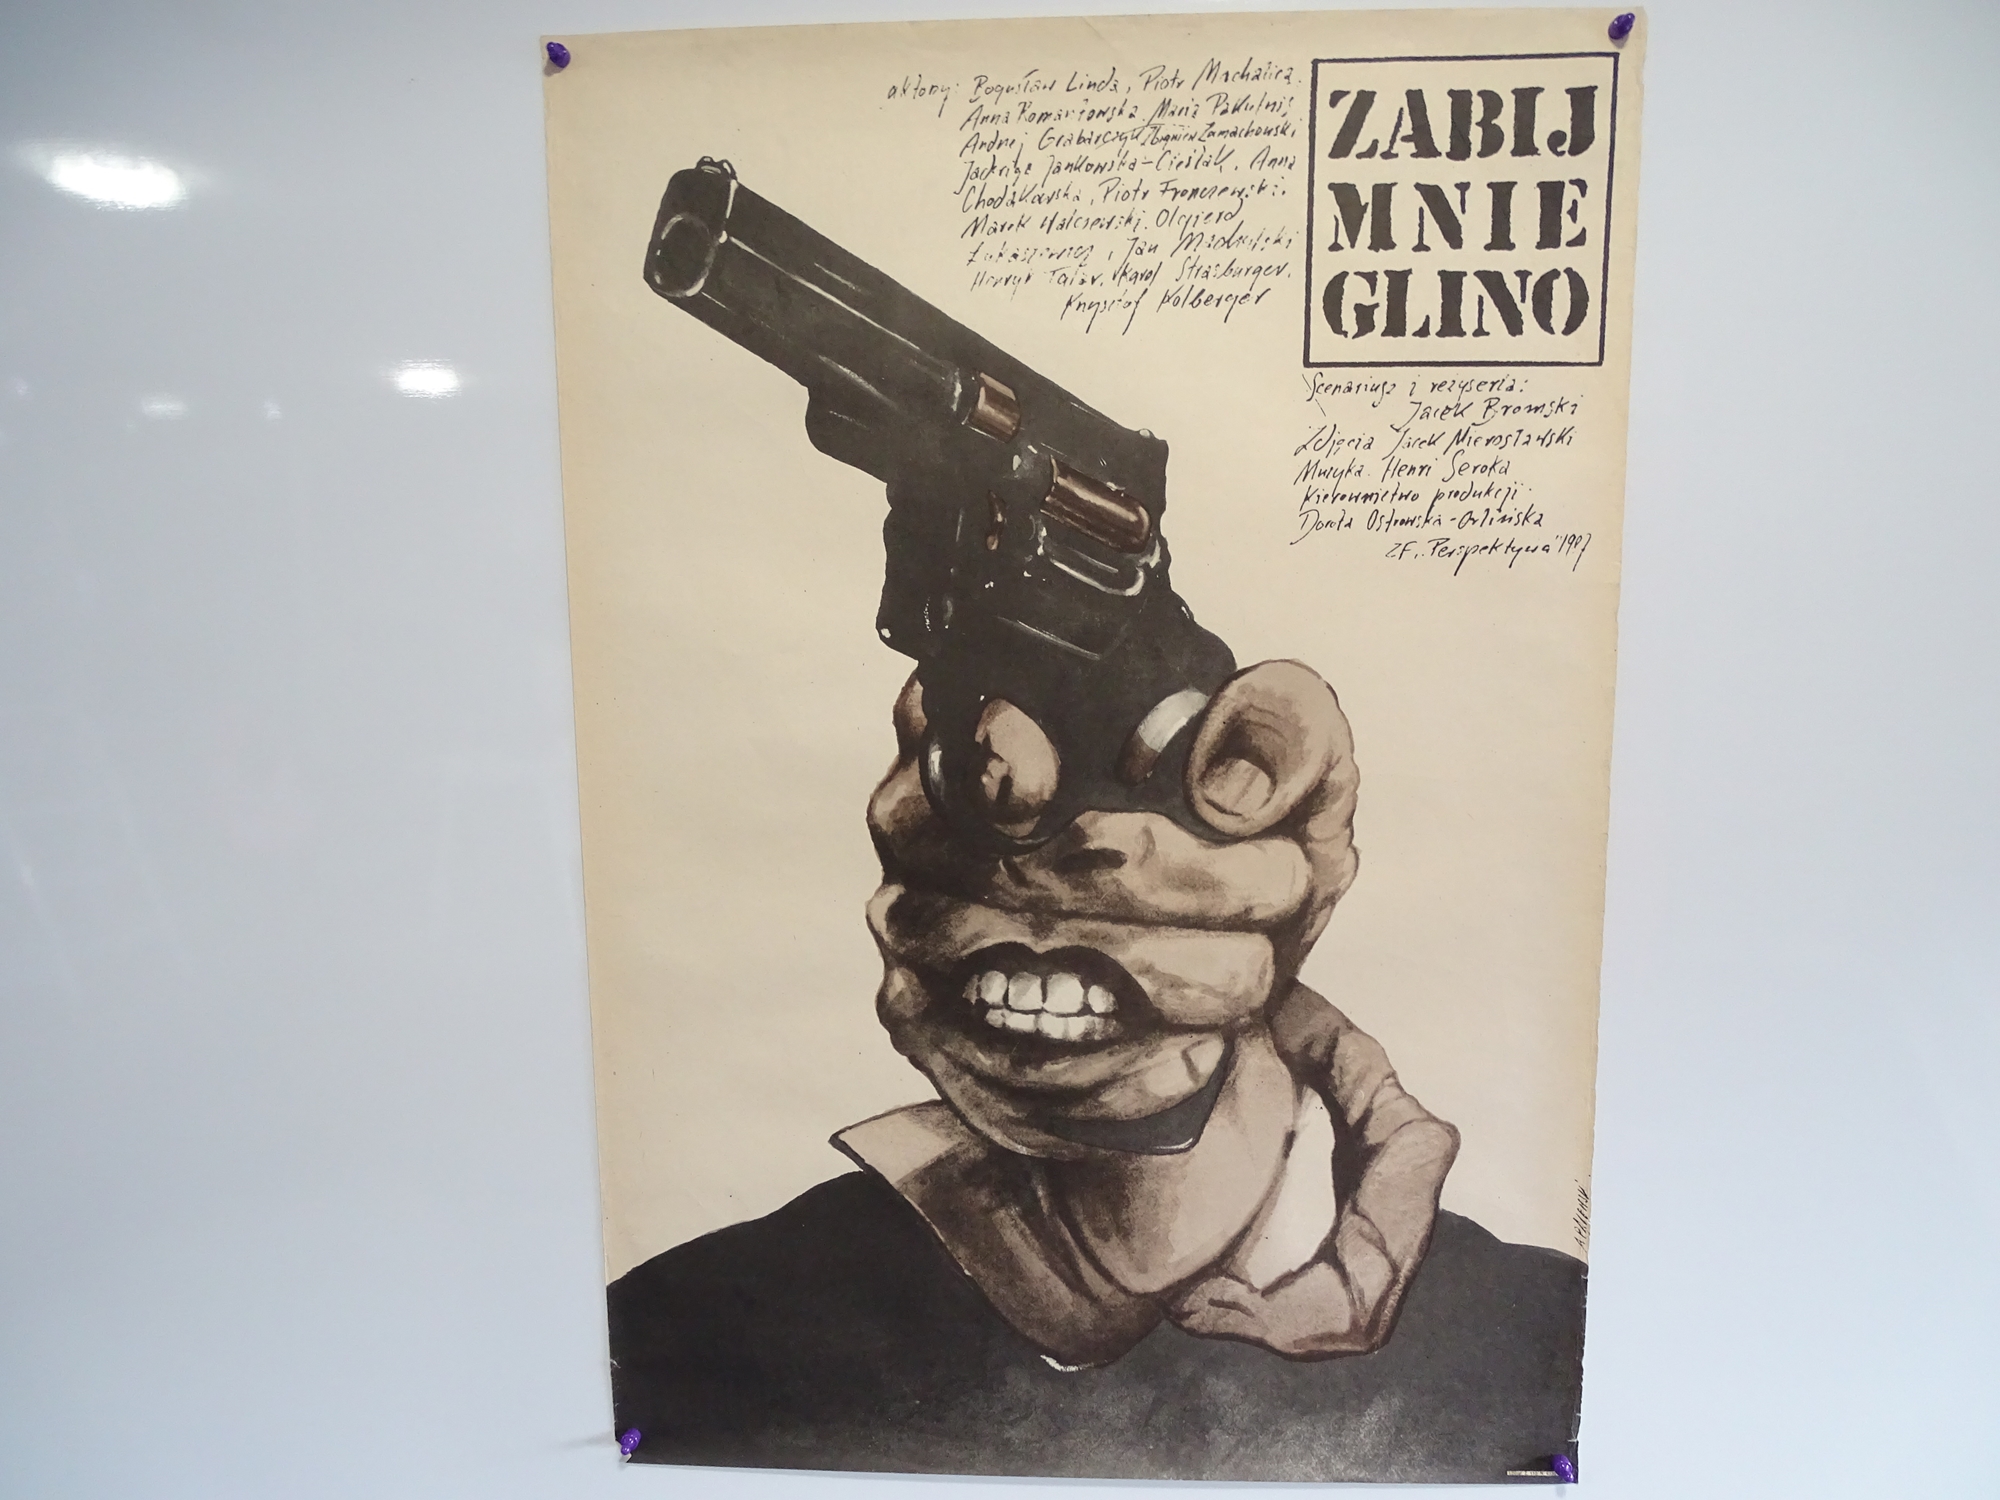 ZABIJ MNIE GLINO (KILL ME, COP)(1987) - Country of origin Polish film poster (67cm x 97cm) Surreal